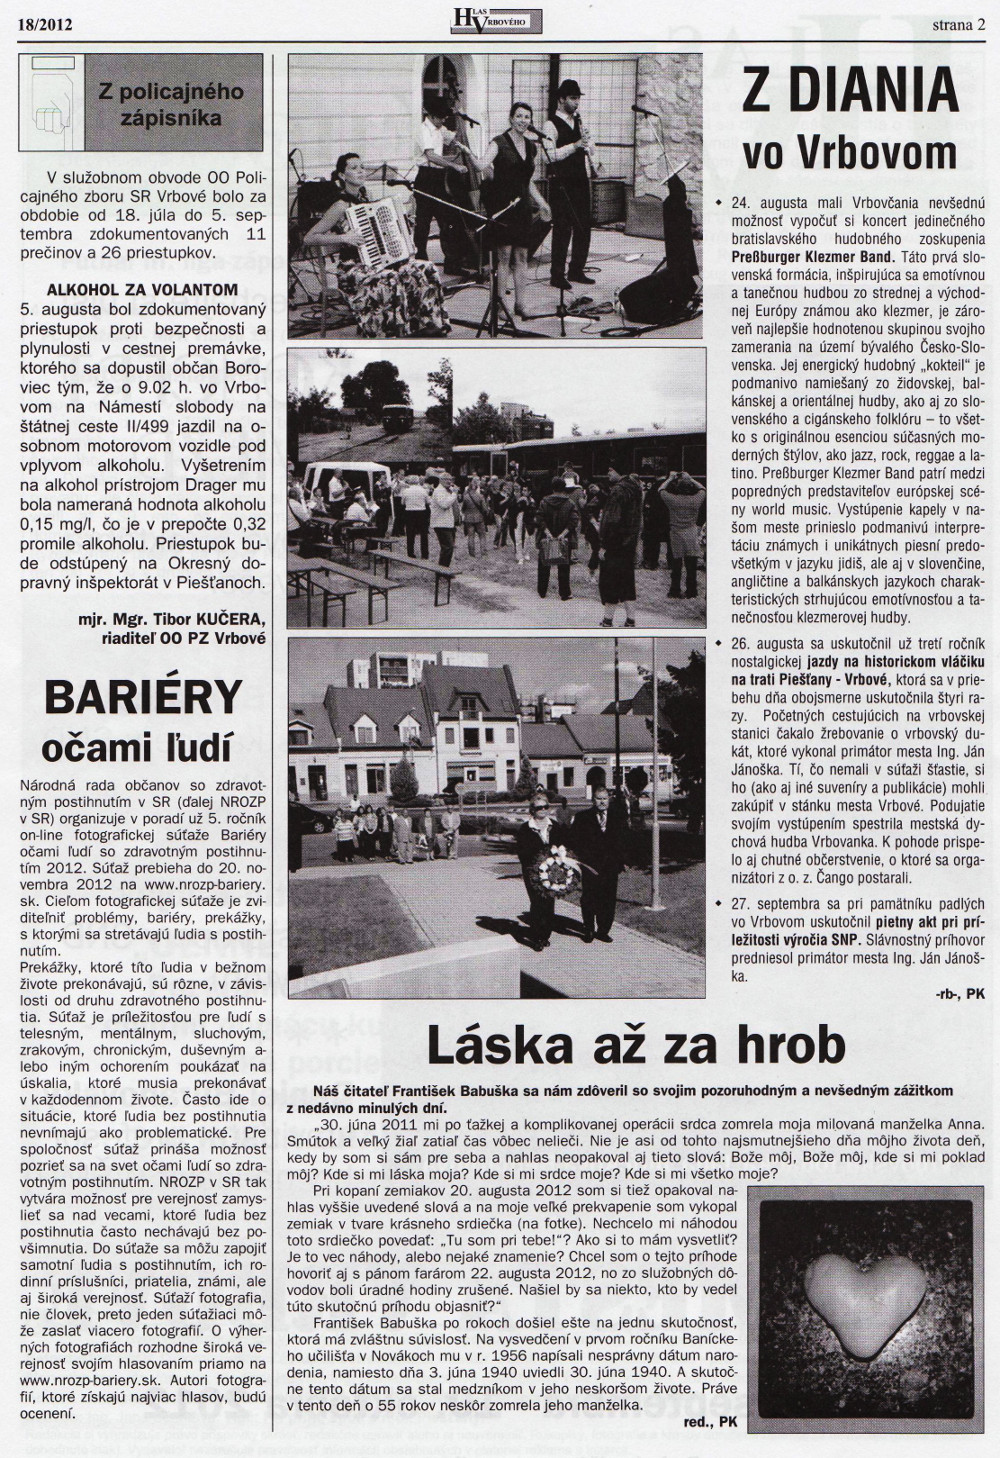 Hlas Vrbového 18/2012, strana 2